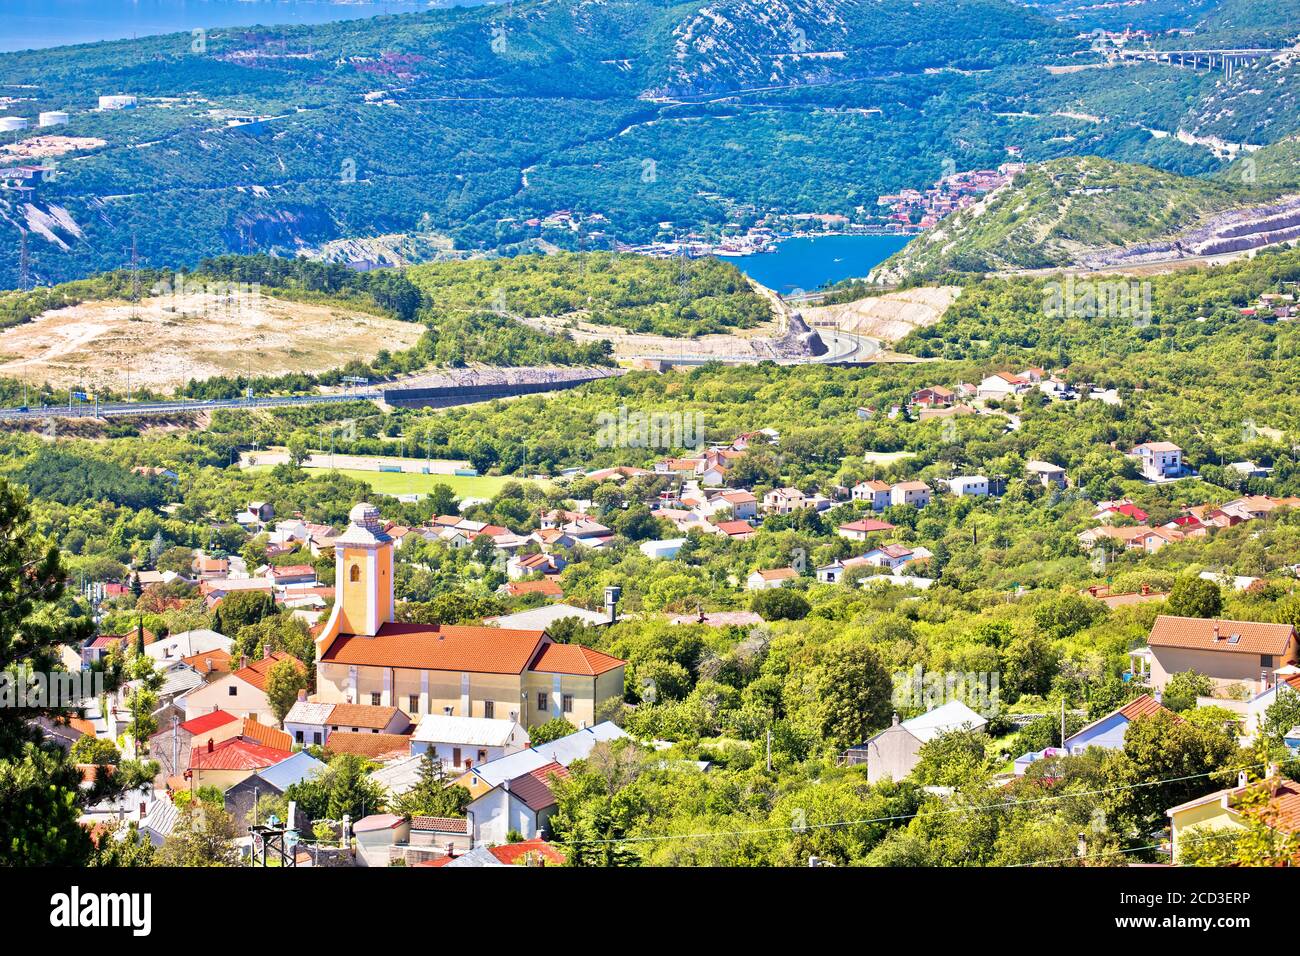 Village de Hreljin au-dessus de la baie de Kvarner vue panoramique, région de Rijeka en Croatie Banque D'Images